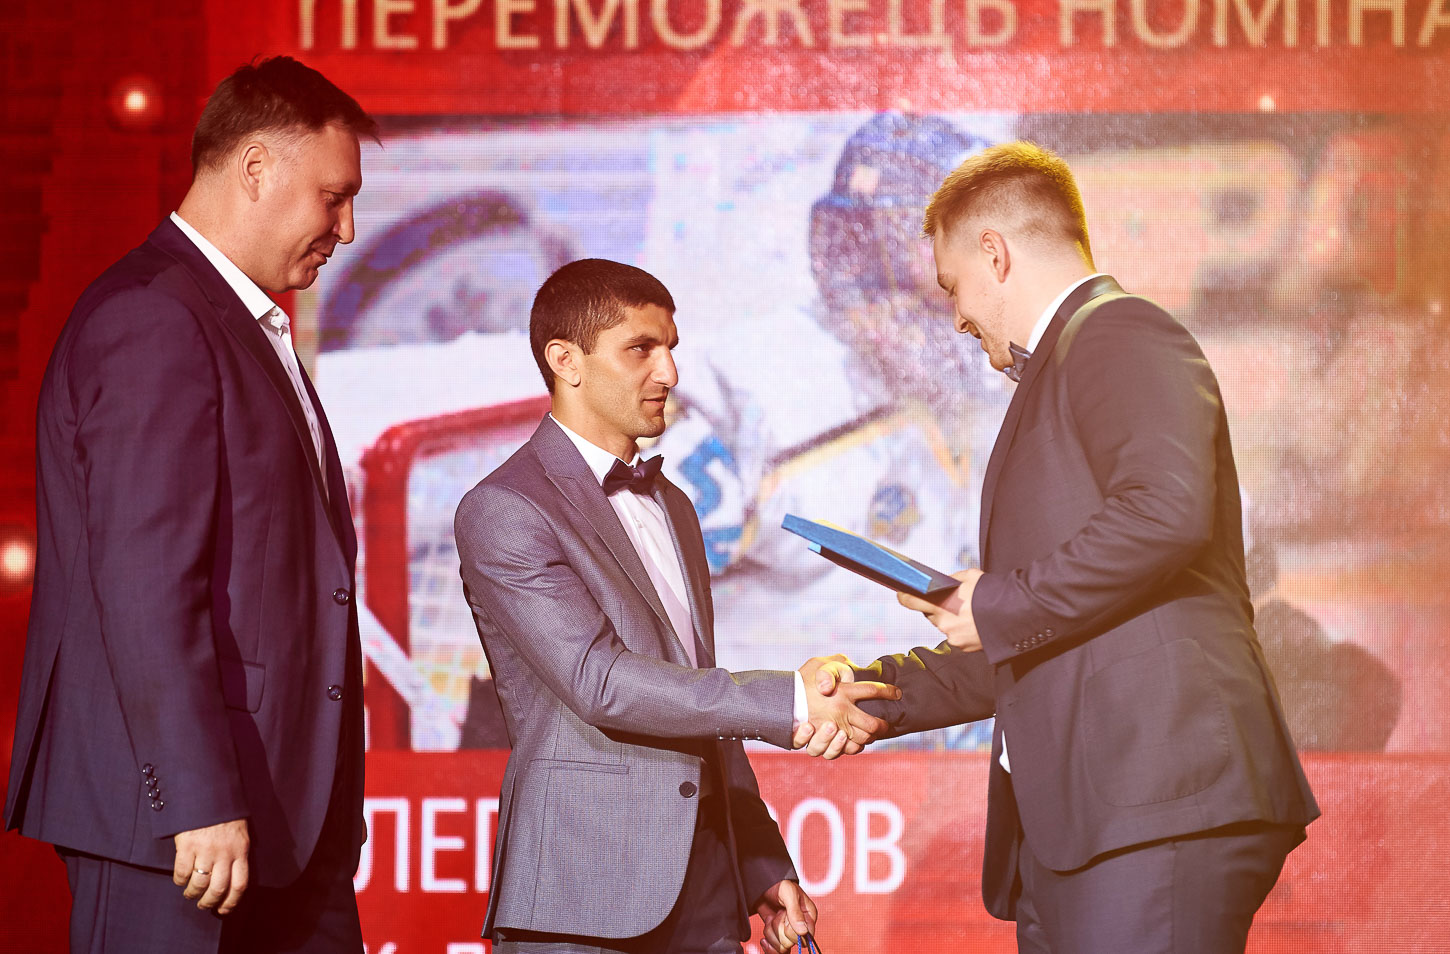 15 июня Артём Далакян проведёт защиту звания чемпиона мира по боксу по версии WBA